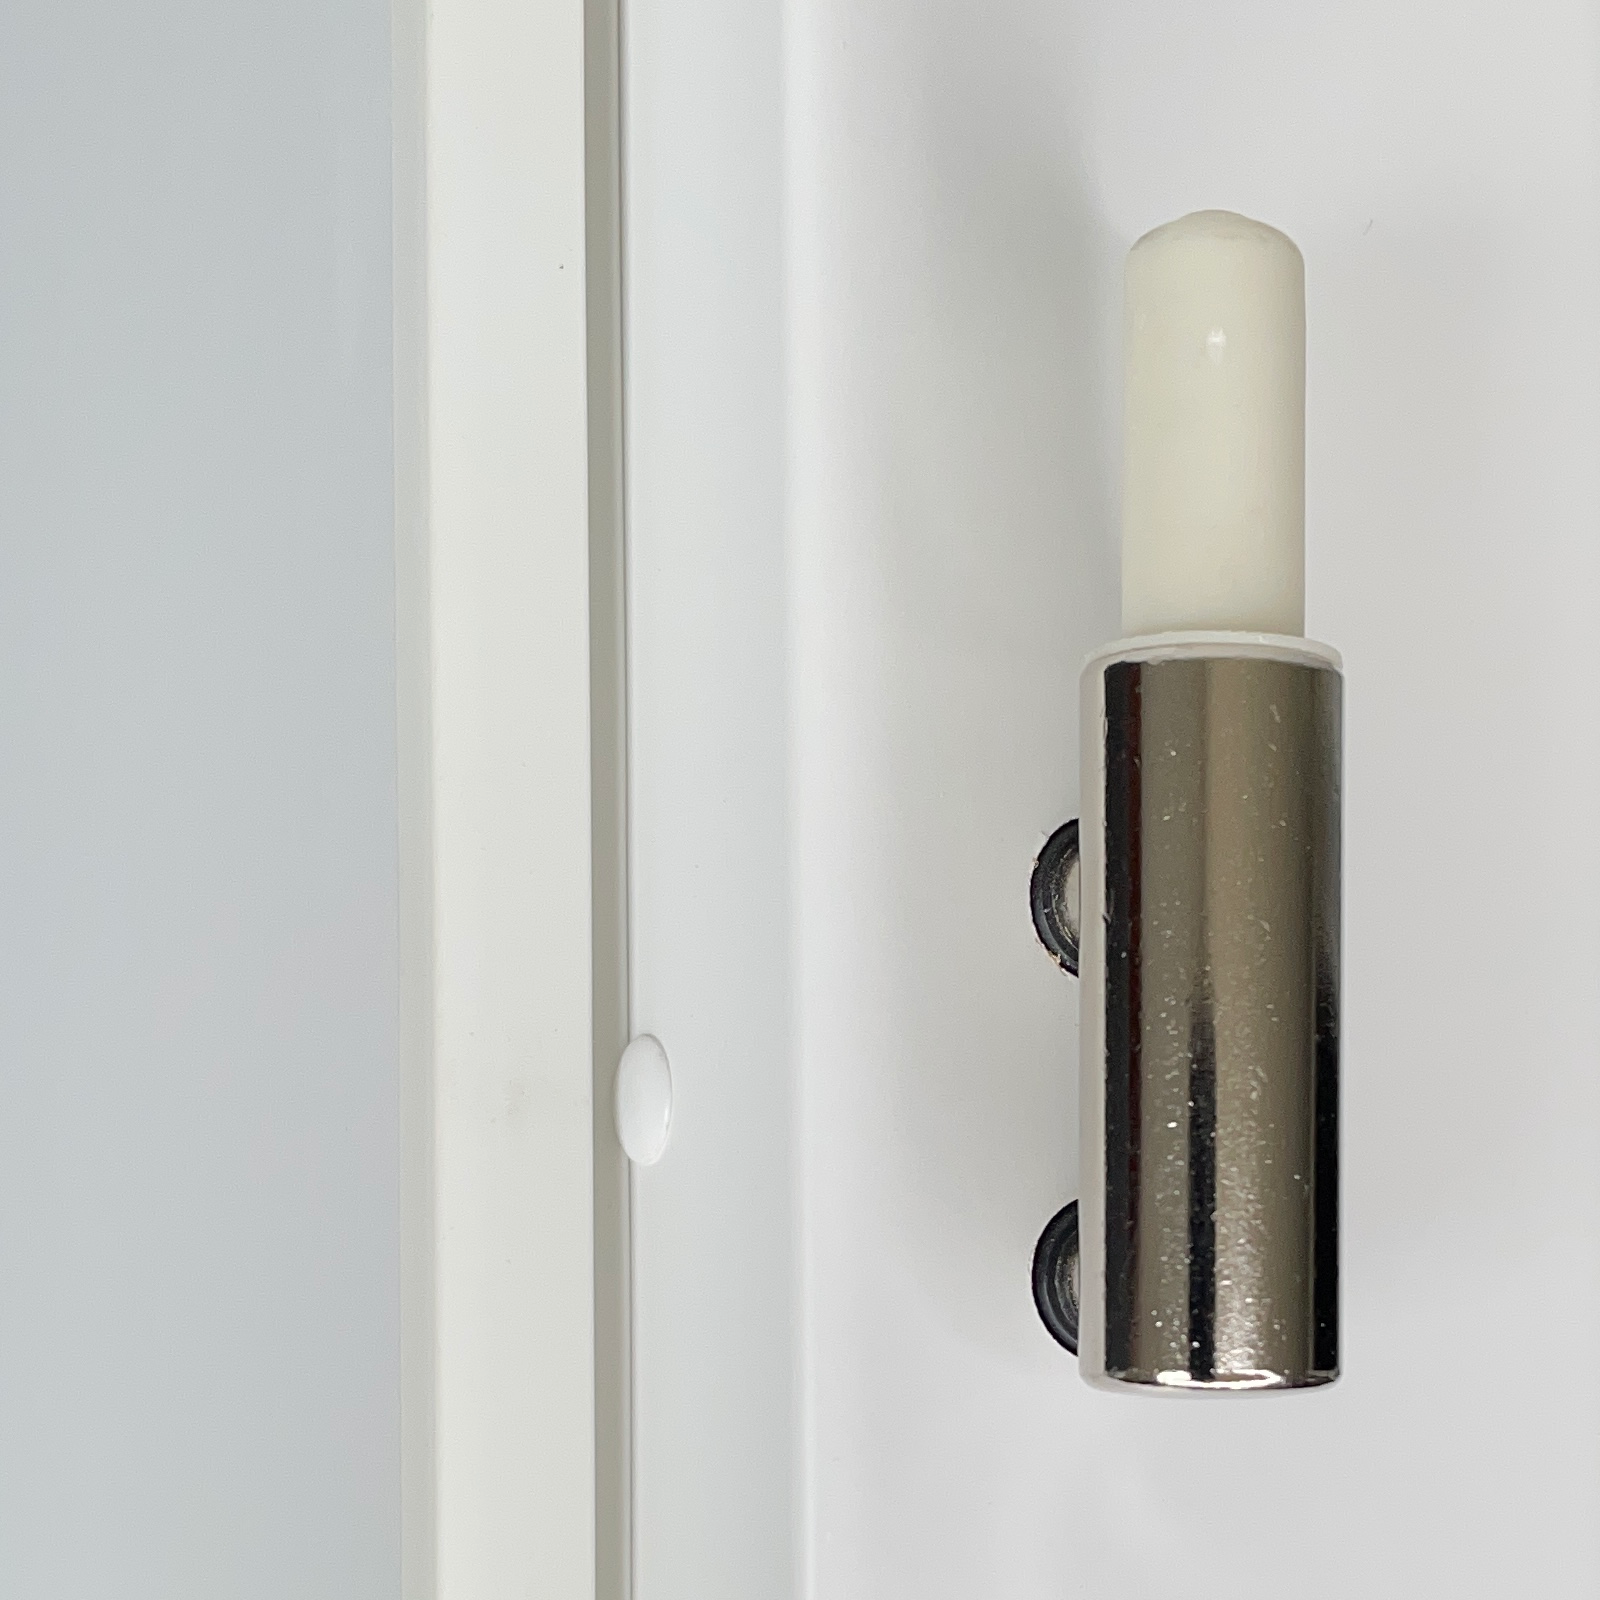 Zimmertür mit Zarge brillant-weiß 2 Rillen quer Designkante - Modell Designtür Q23